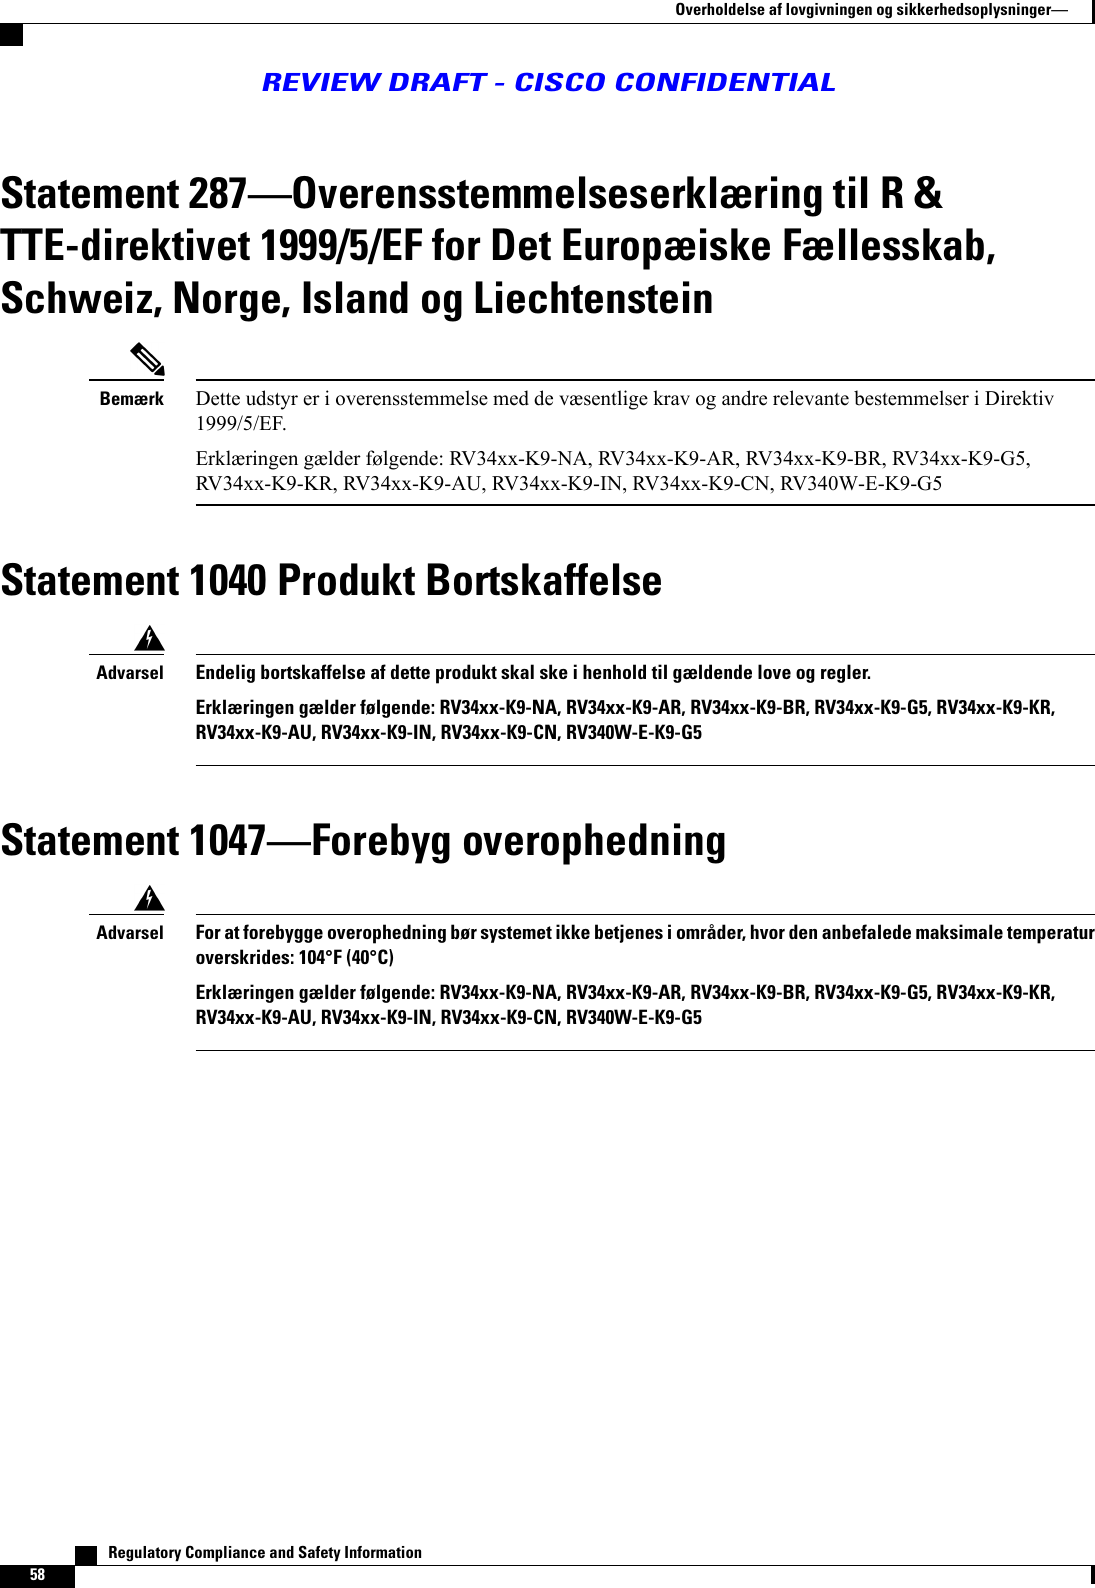 Statement 287Overensstemmelseserklæring til R &amp;TTE-direktivet 1999/5/EF for Det Europæiske Fællesskab,Schweiz, Norge, Island og LiechtensteinDette udstyr er i overensstemmelse med de væsentlige krav og andre relevante bestemmelser i Direktiv1999/5/EF.Erklæringen gælder følgende: RV34xx-K9-NA, RV34xx-K9-AR, RV34xx-K9-BR, RV34xx-K9-G5,RV34xx-K9-KR, RV34xx-K9-AU, RV34xx-K9-IN, RV34xx-K9-CN, RV340W-E-K9-G5BemærkStatement 1040 Produkt BortskaffelseEndelig bortskaffelse af dette produkt skal ske i henhold til gældende love og regler.Erklæringen gælder følgende: RV34xx-K9-NA, RV34xx-K9-AR, RV34xx-K9-BR, RV34xx-K9-G5, RV34xx-K9-KR,RV34xx-K9-AU, RV34xx-K9-IN, RV34xx-K9-CN, RV340W-E-K9-G5AdvarselStatement 1047Forebyg overophedningFor at forebygge overophedning bør systemet ikke betjenes i områder, hvor den anbefalede maksimale temperaturoverskrides: 104°F (40°C)Erklæringen gælder følgende: RV34xx-K9-NA, RV34xx-K9-AR, RV34xx-K9-BR, RV34xx-K9-G5, RV34xx-K9-KR,RV34xx-K9-AU, RV34xx-K9-IN, RV34xx-K9-CN, RV340W-E-K9-G5Advarsel   Regulatory Compliance and Safety Information58Overholdelse af lovgivningen og sikkerhedsoplysningerREVIEW DRAFT - CISCO CONFIDENTIAL